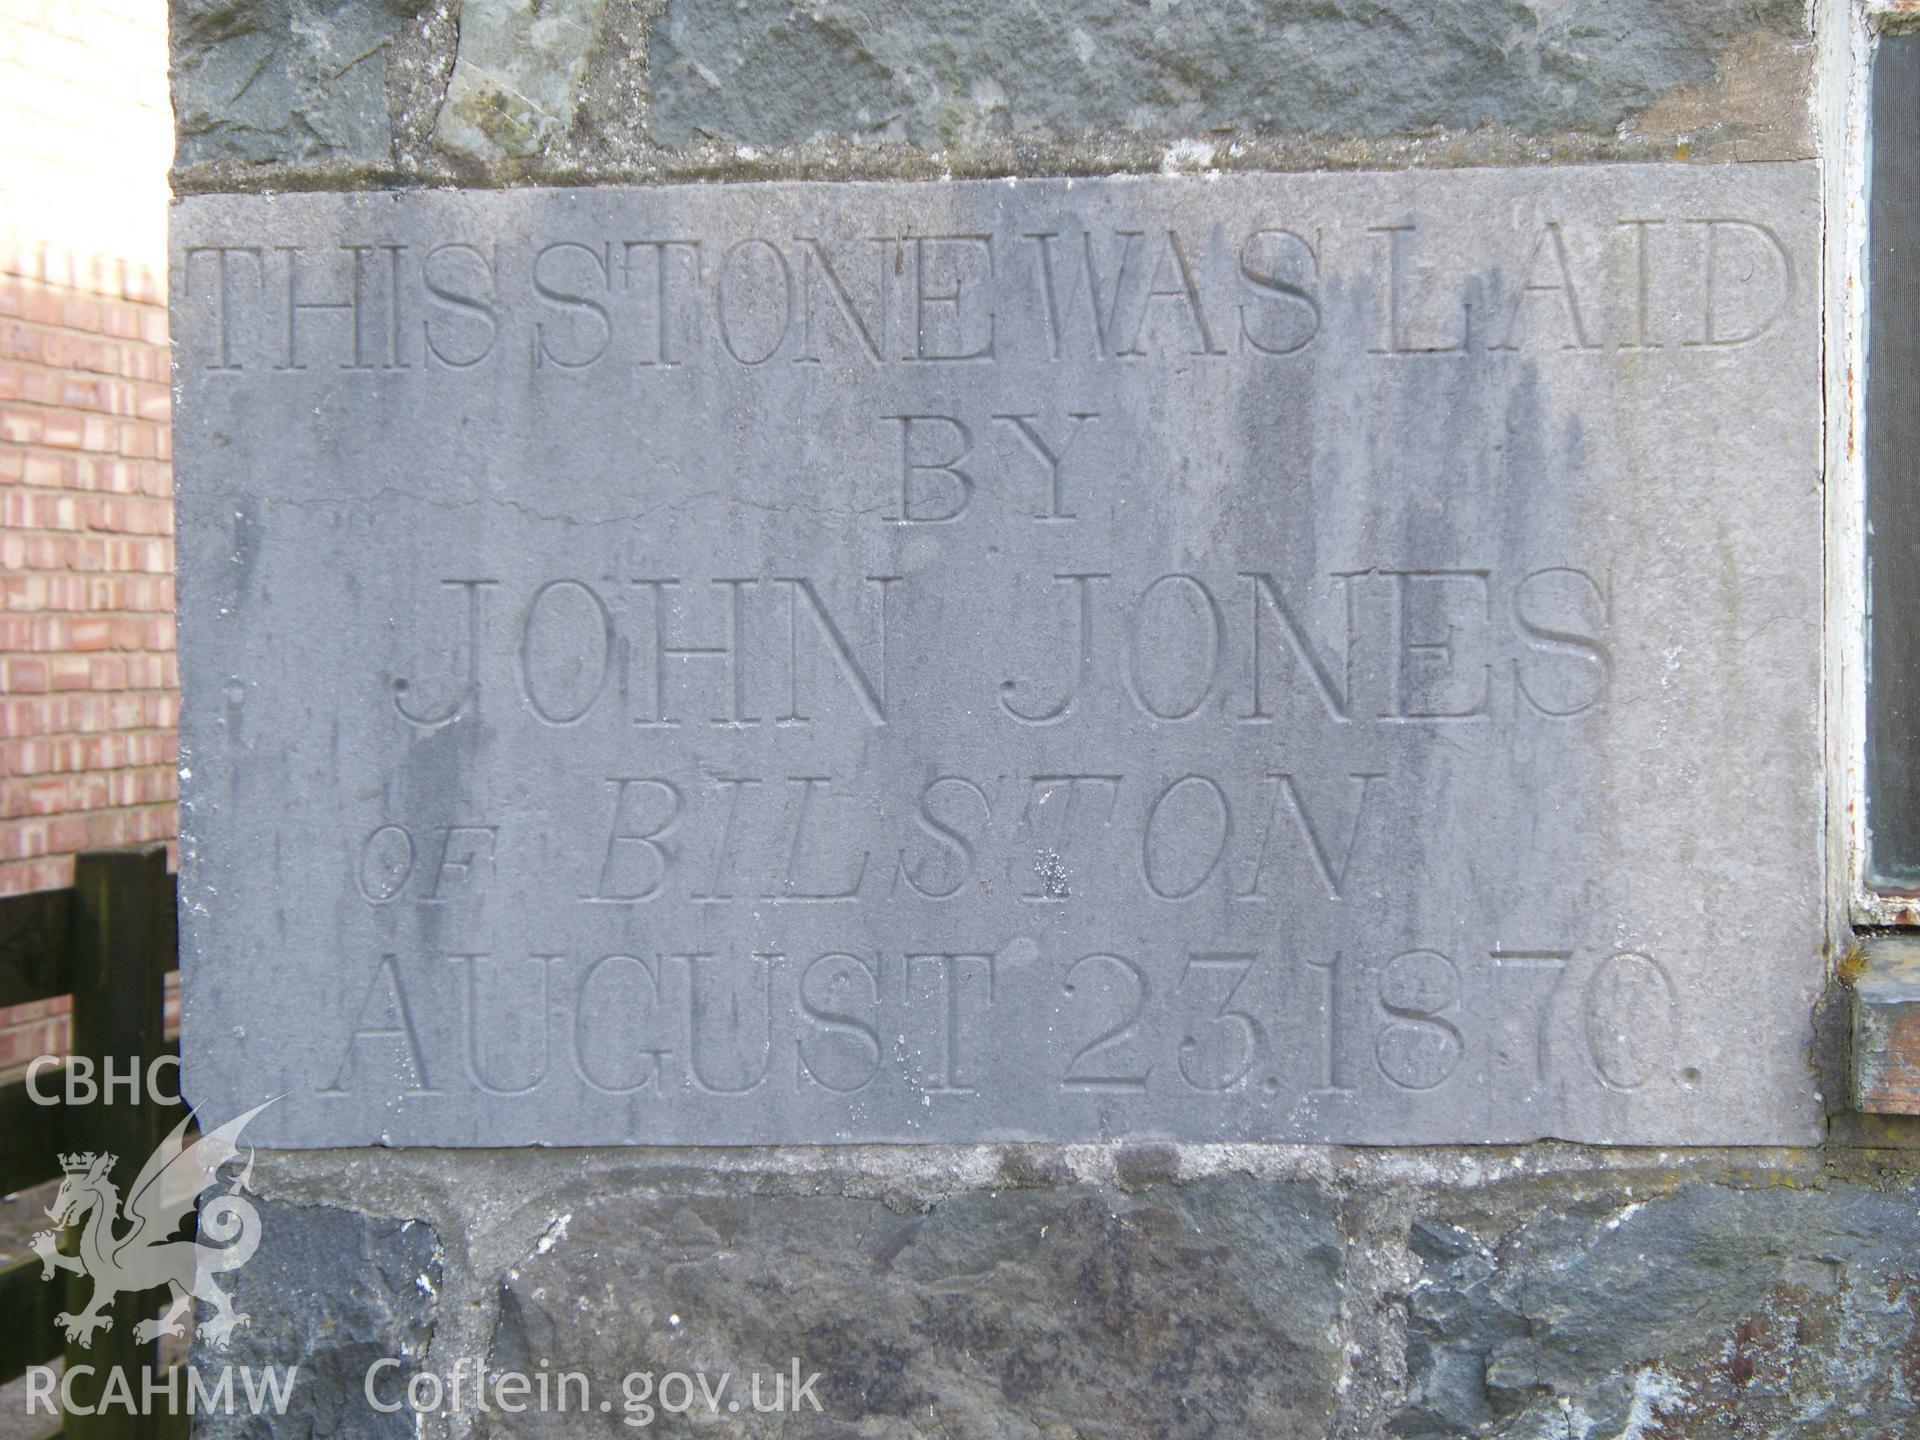 Foundation stone, John Jones of Bilston, August 23 1870.